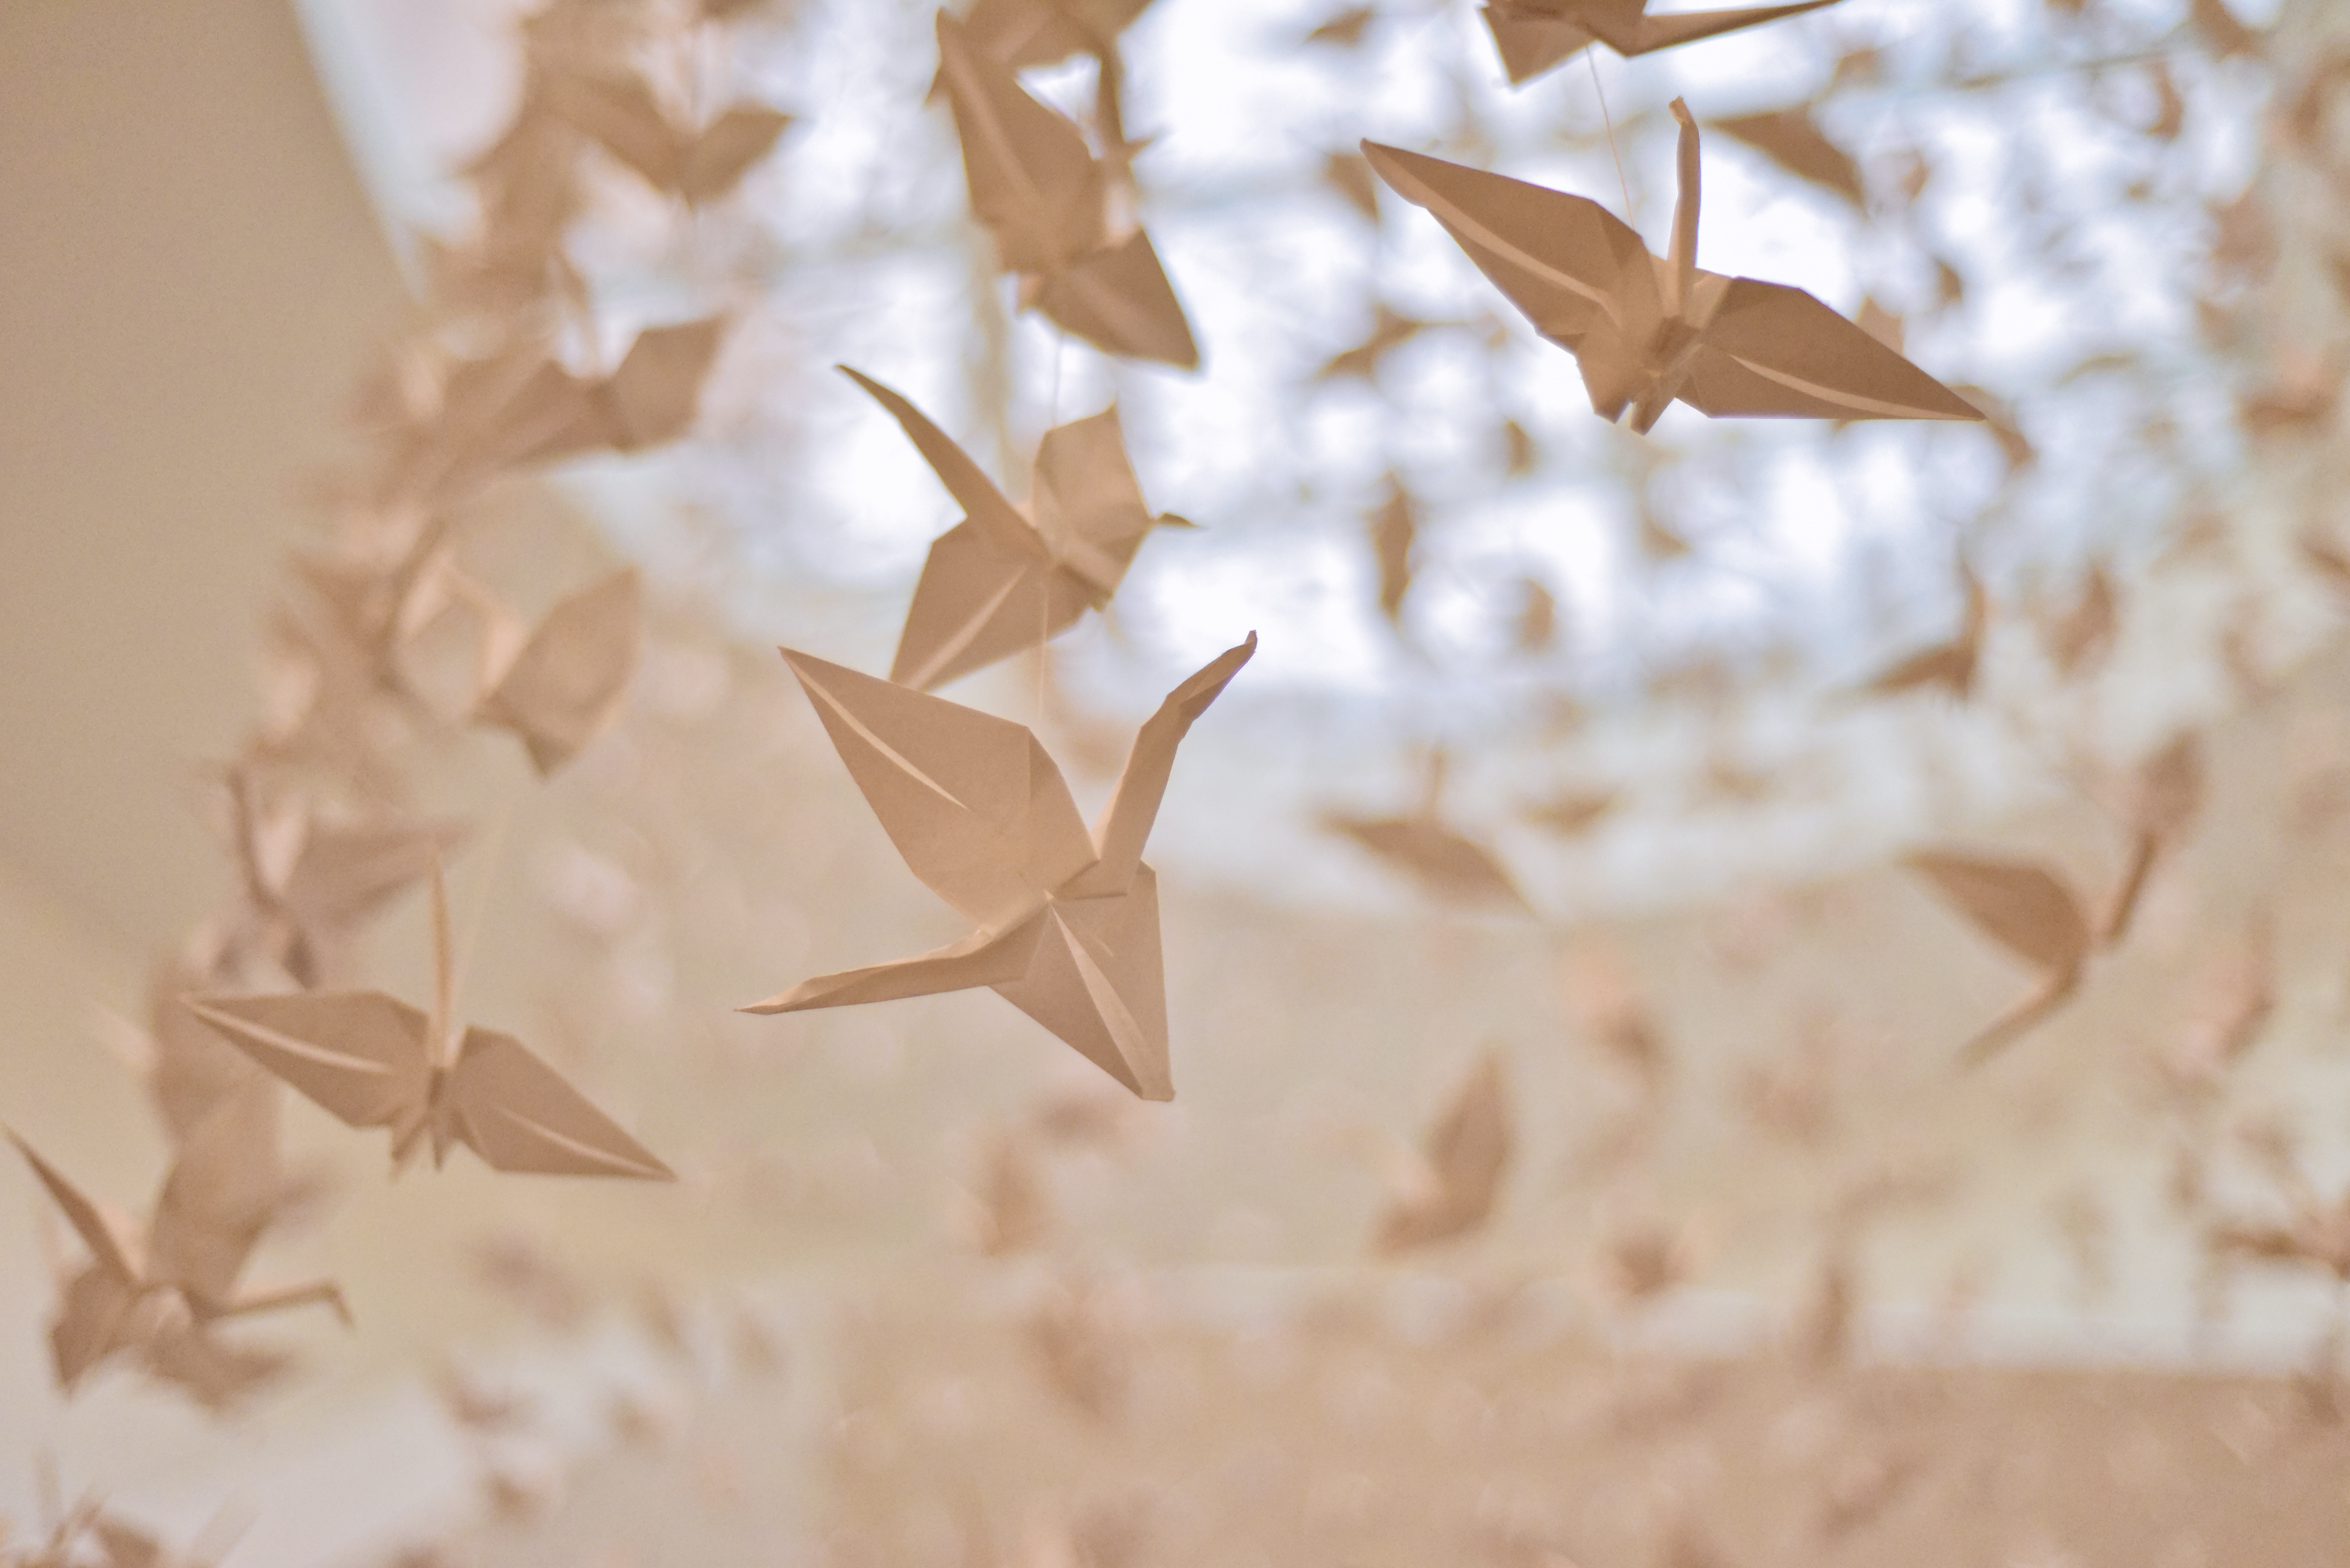 A hajtogatás művészete – Így terjedt el az origami